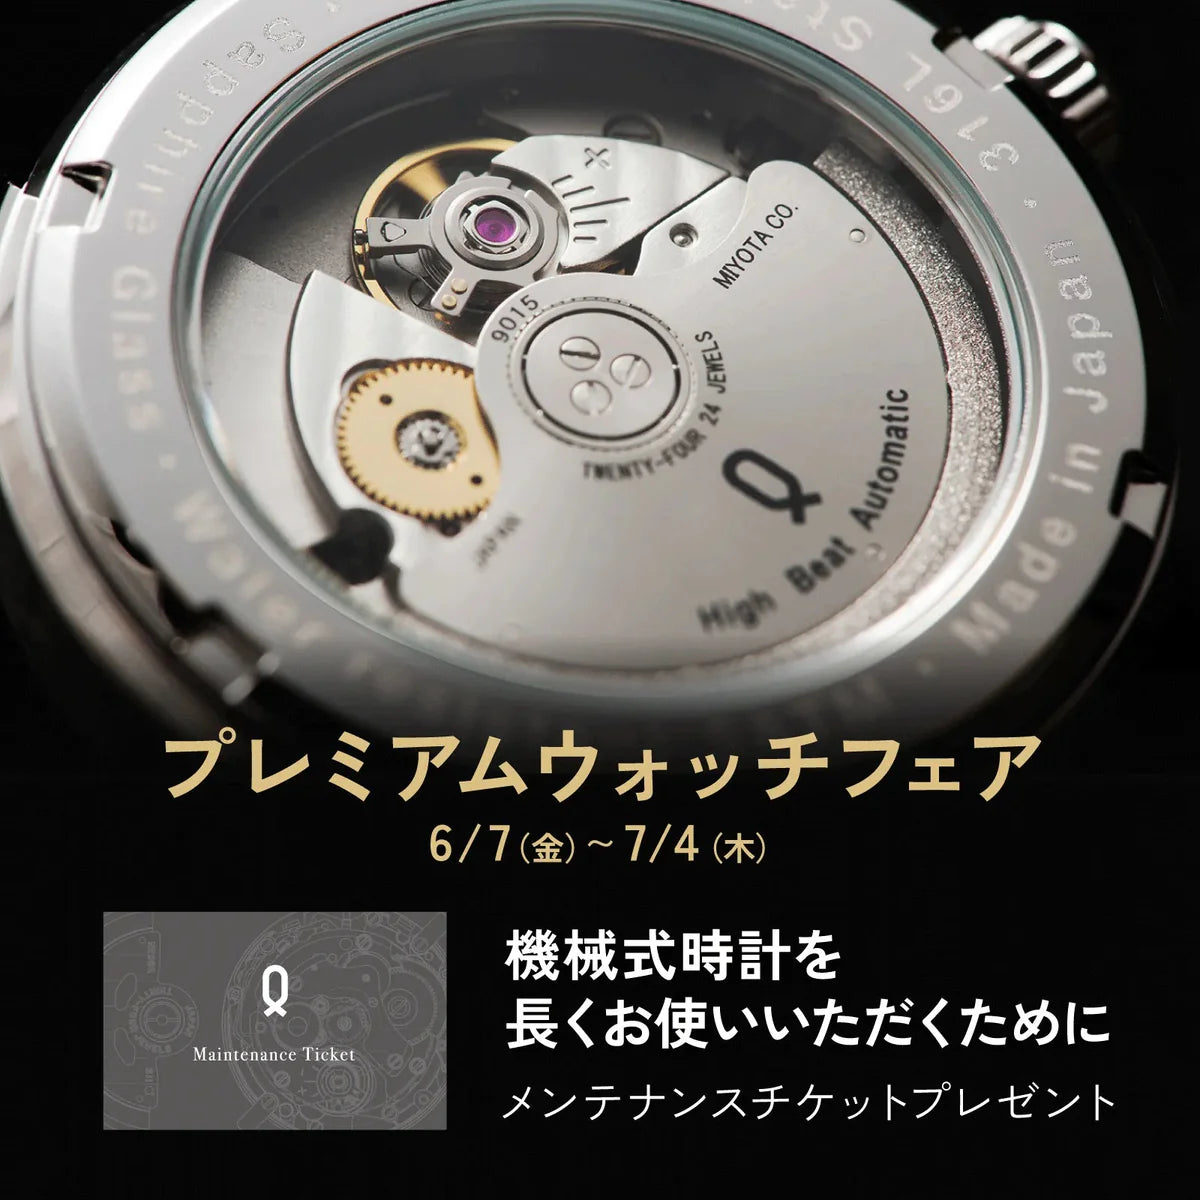 Knot ATC-40SVNV 機械式腕時計 メンズ 自動巻き ネイビー 日本製 40mm クロノグラフ – Maker's Watch Knot